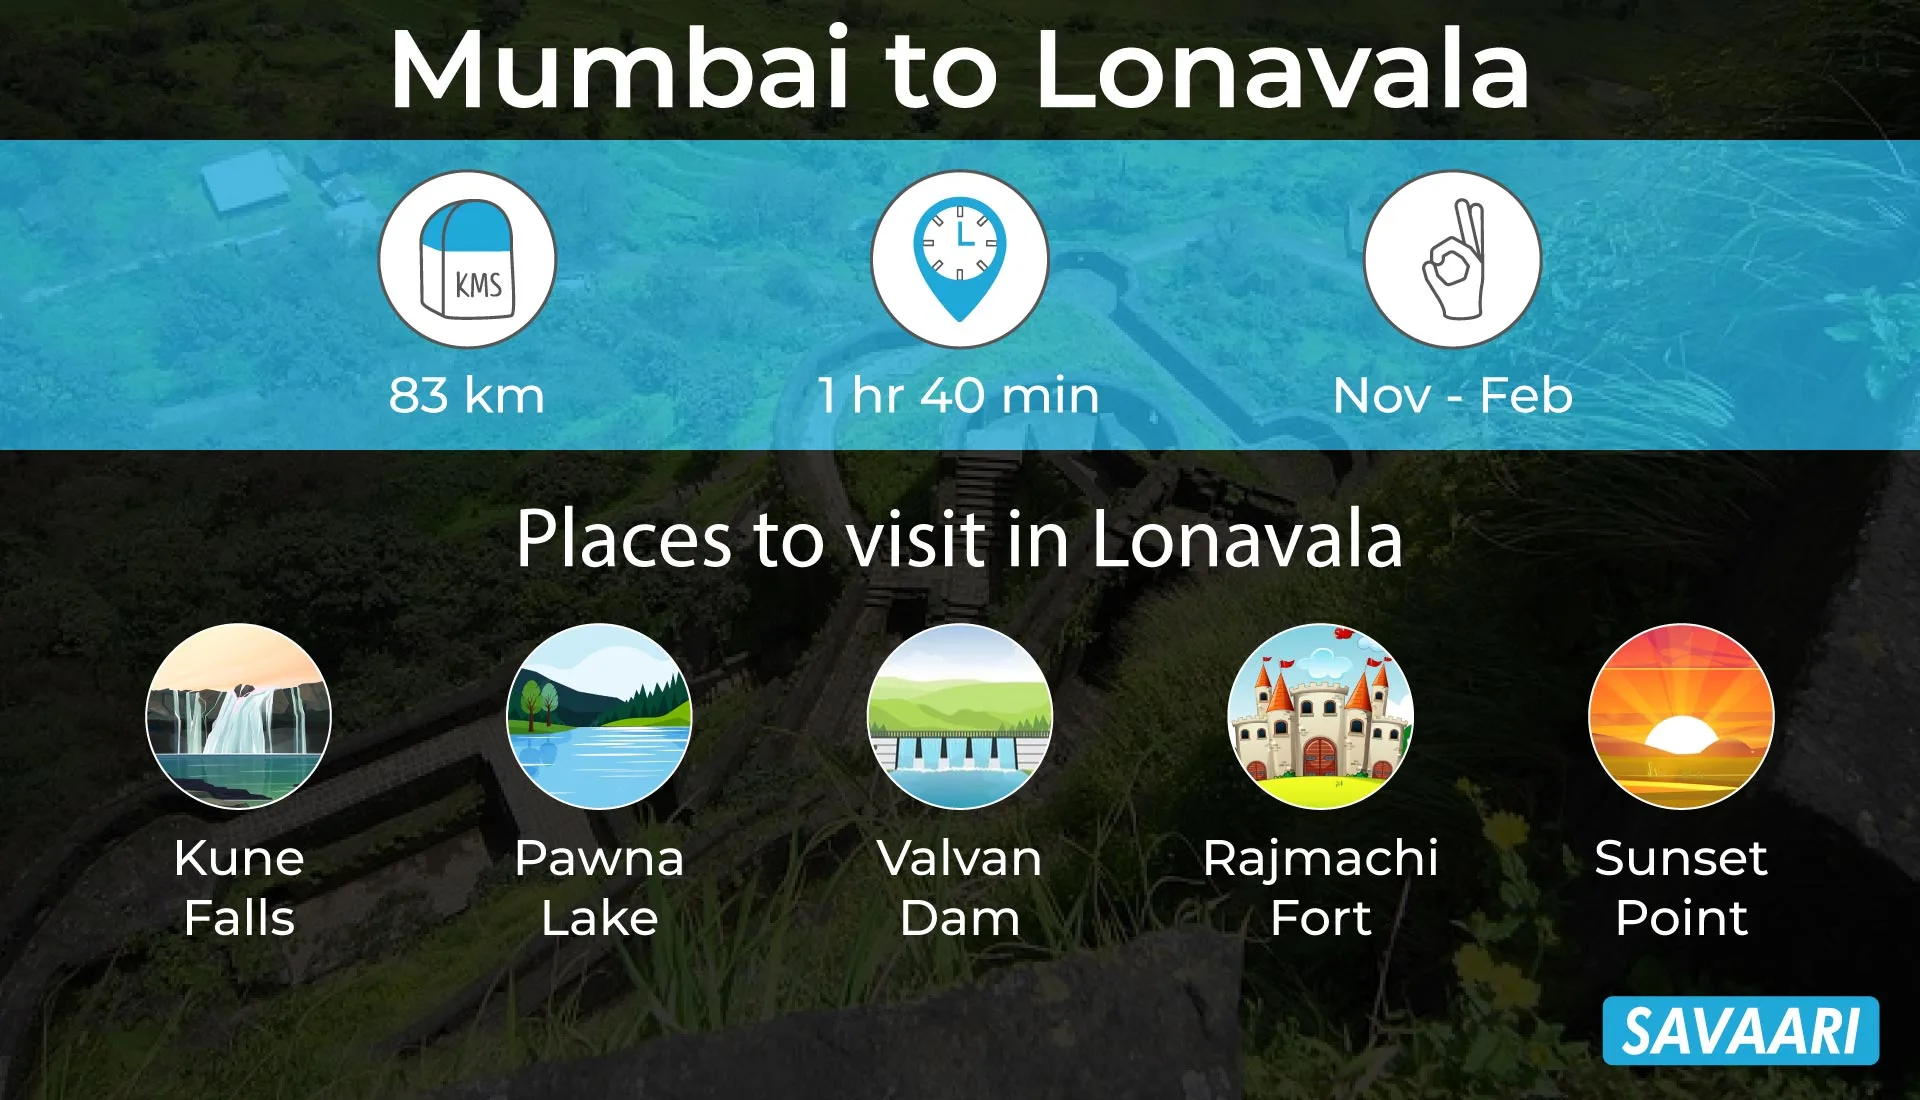 Beautiful place to visit near Mumbai- Lonavala